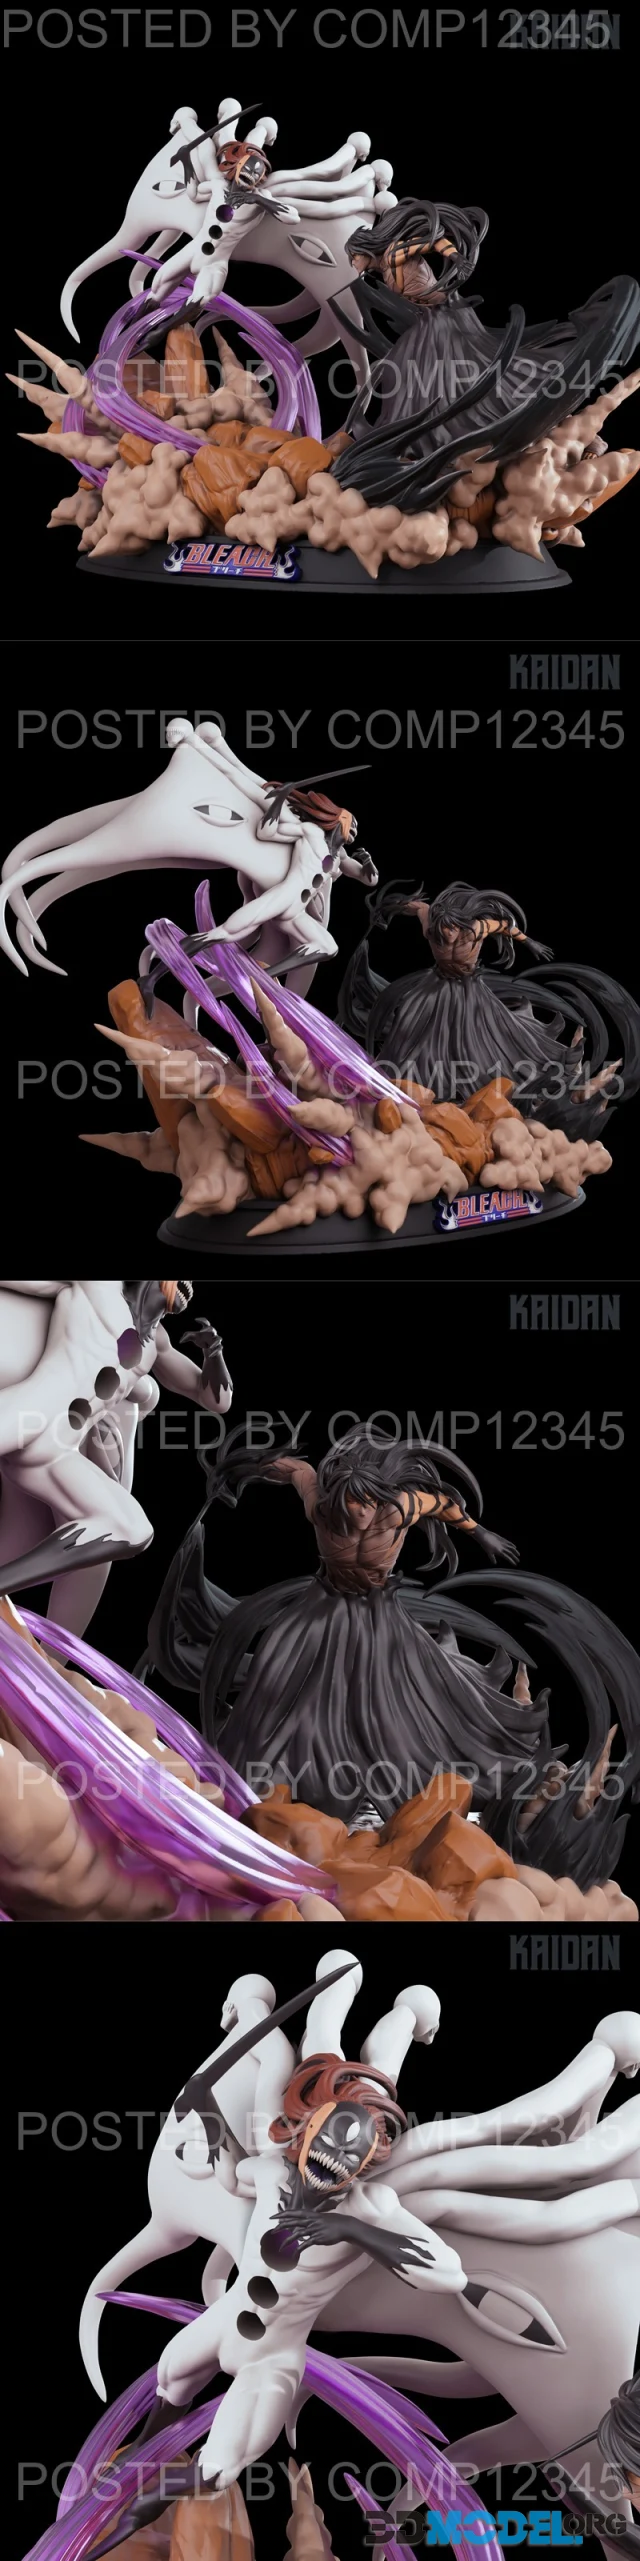 Kaidan Aizen vs Ichigo by Kaiden – Printable